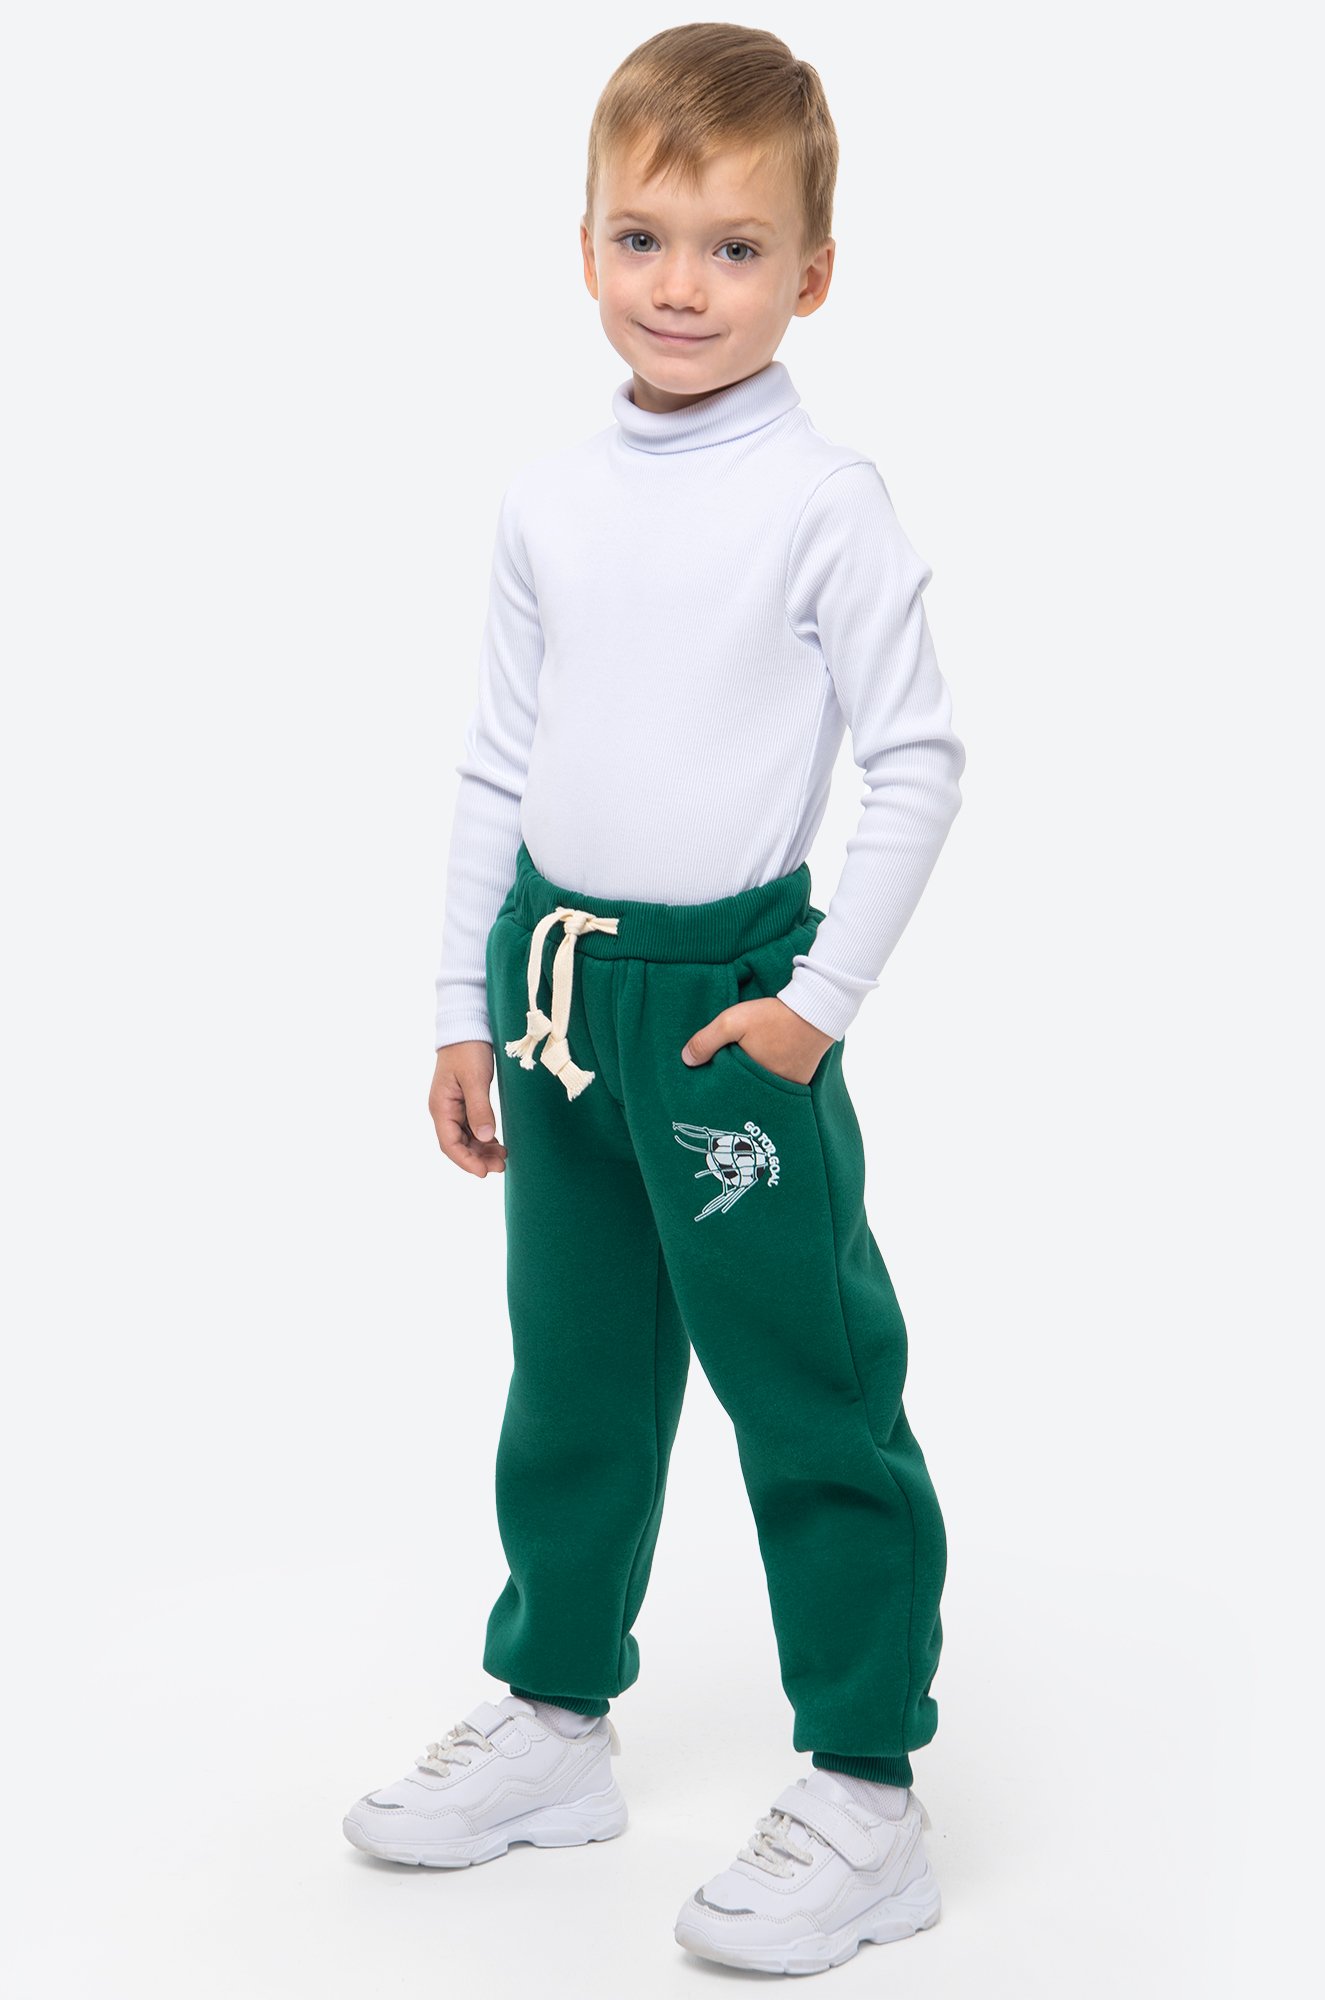 Теплые брюки для мальчика из футера трехнитки с начесом Bonito